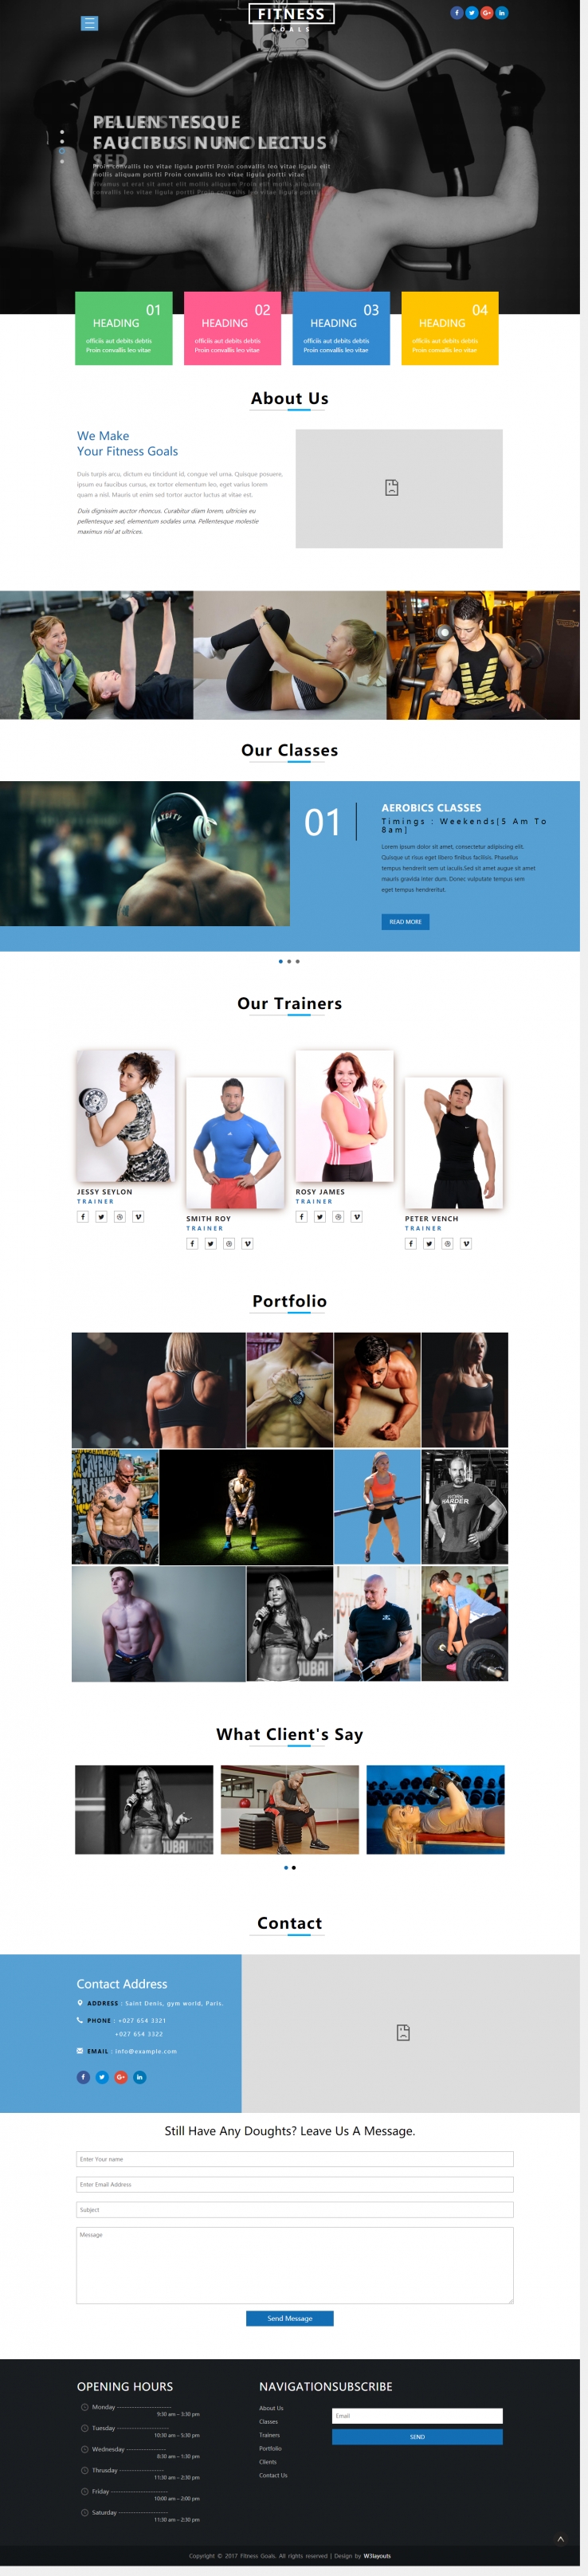 蓝色简洁风格的健身环境团队整站网站源码下载